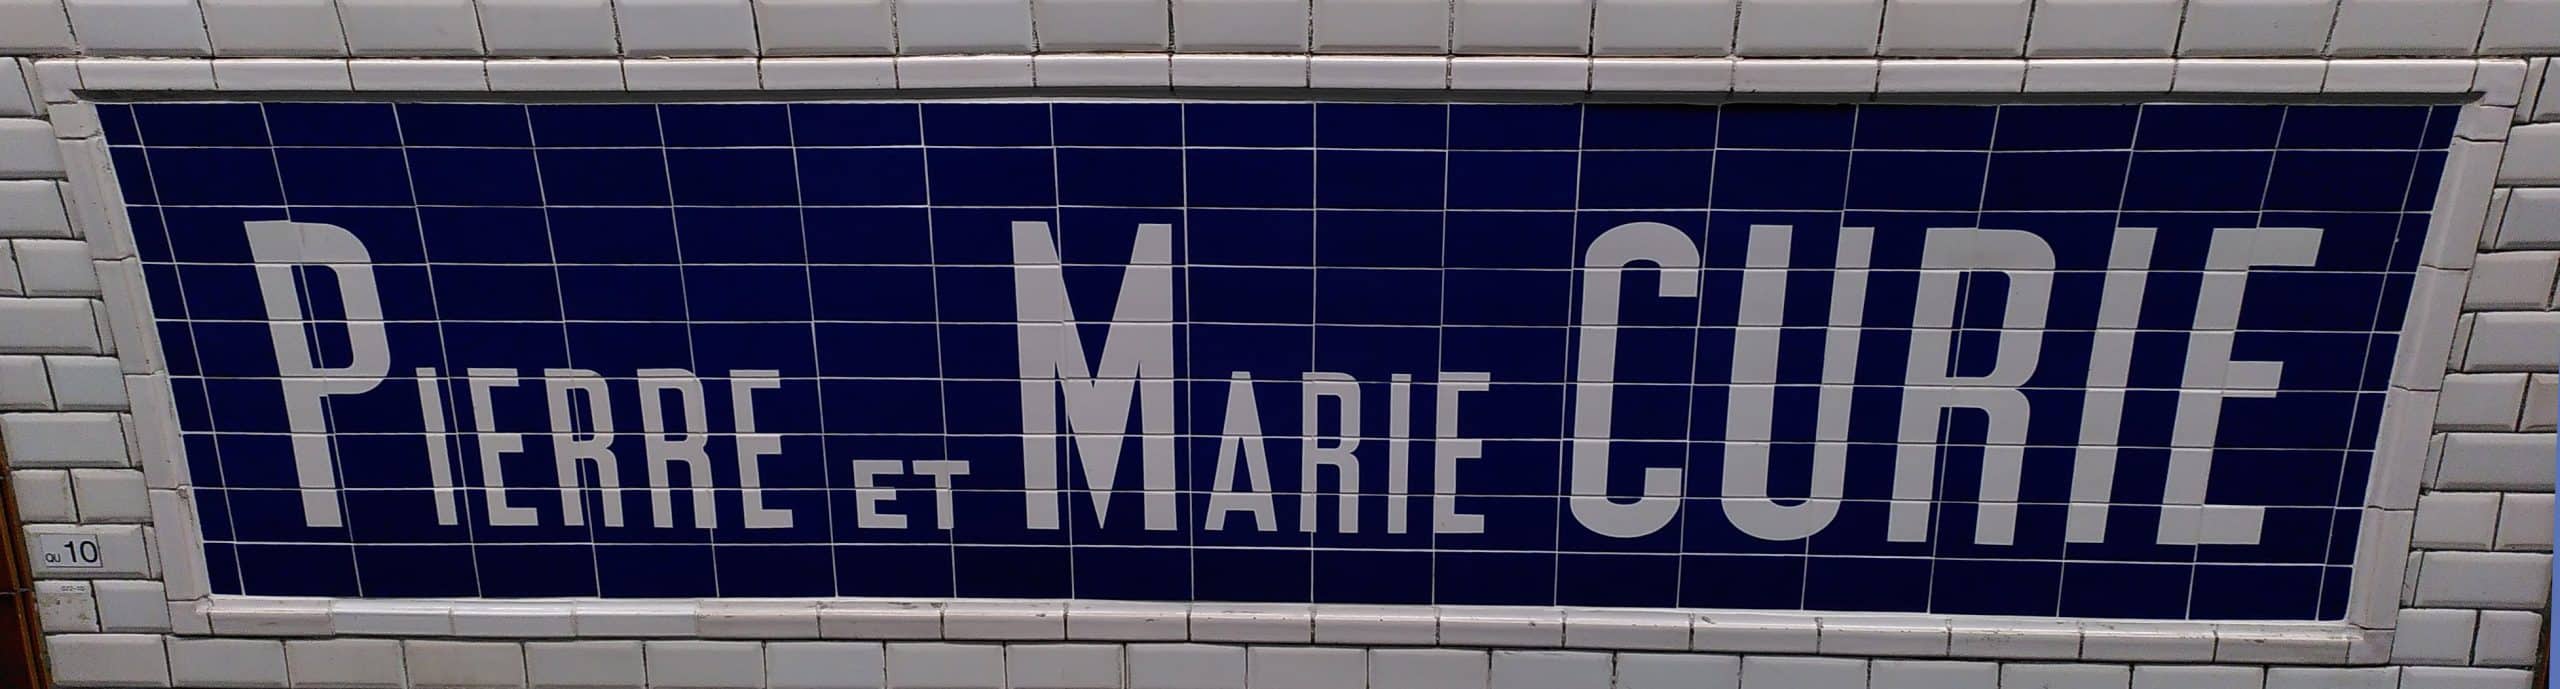 pierre et marie curie métro paris